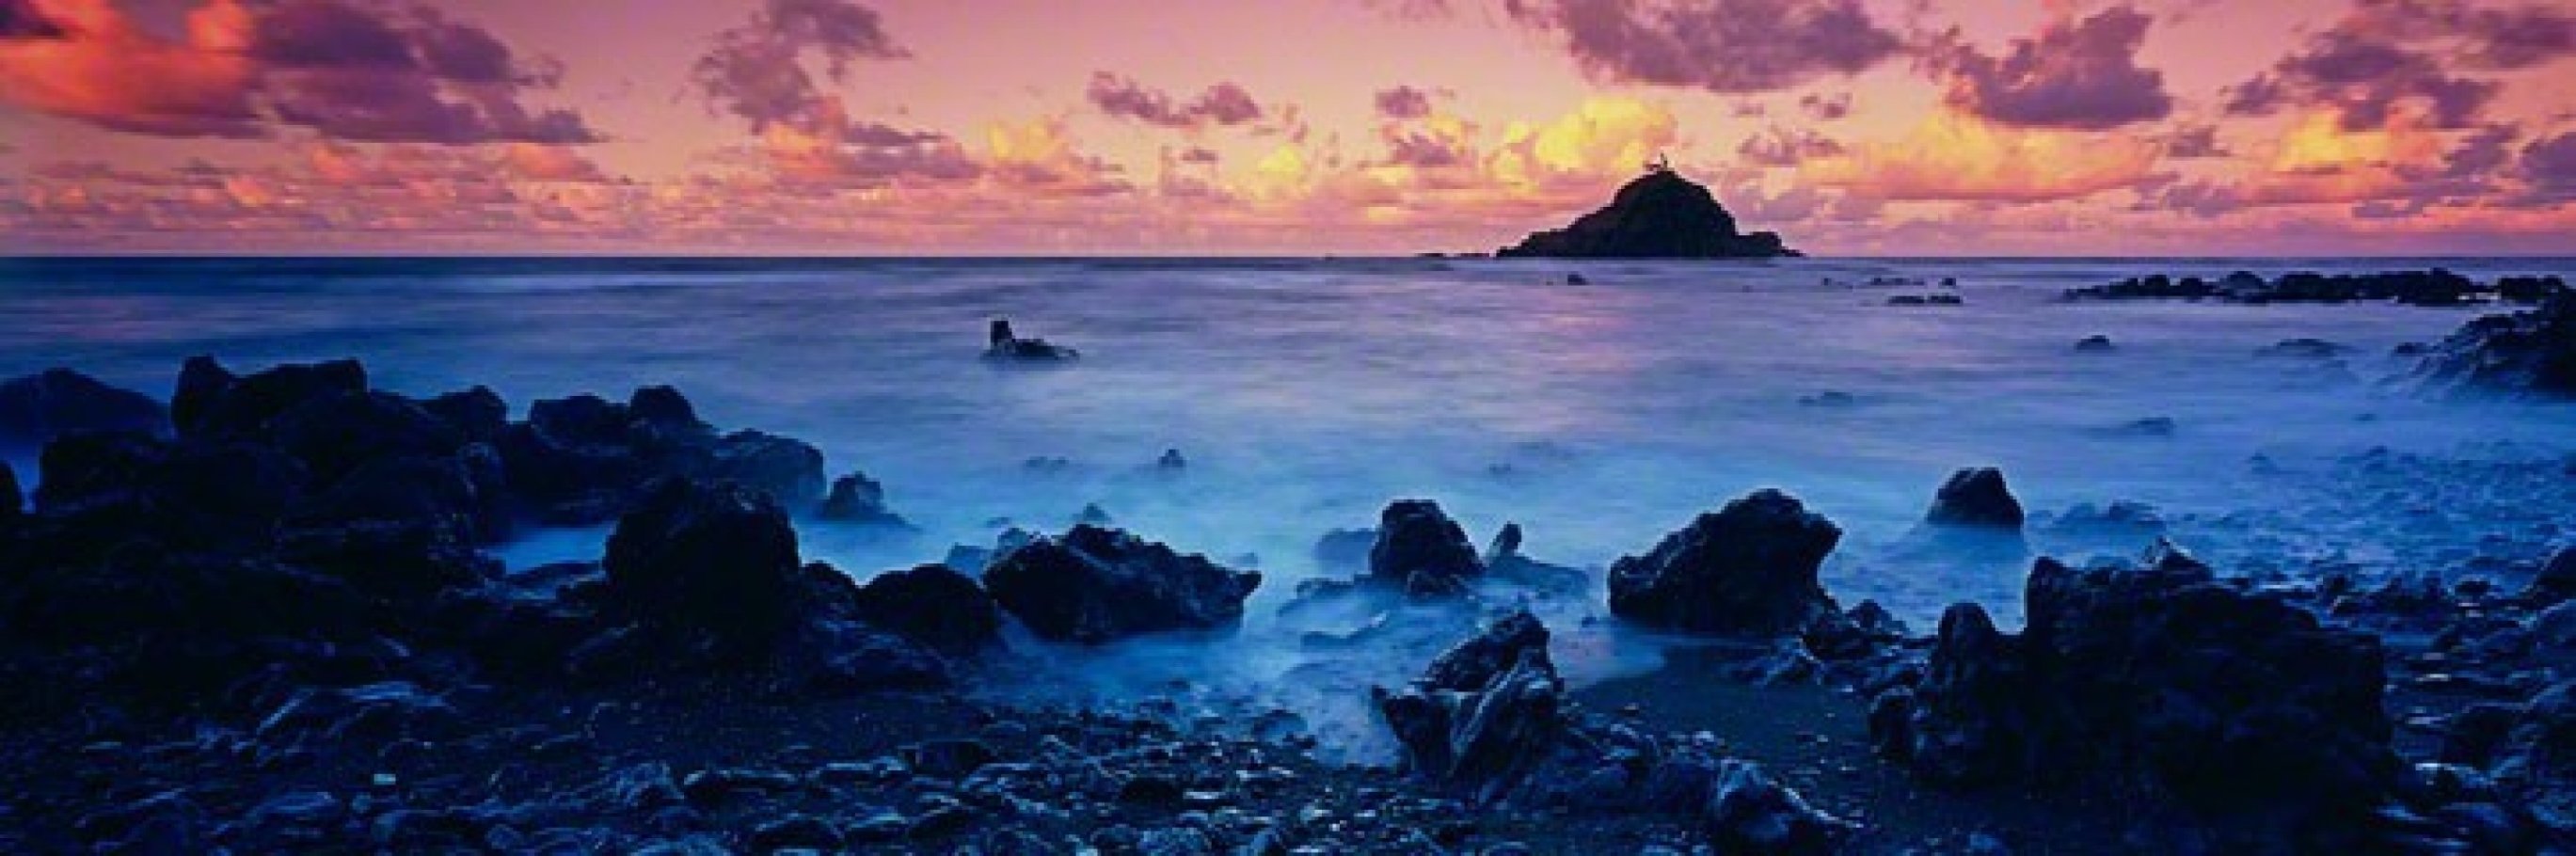 Koki Beach (Hawaii)  Panorama by Peter Lik